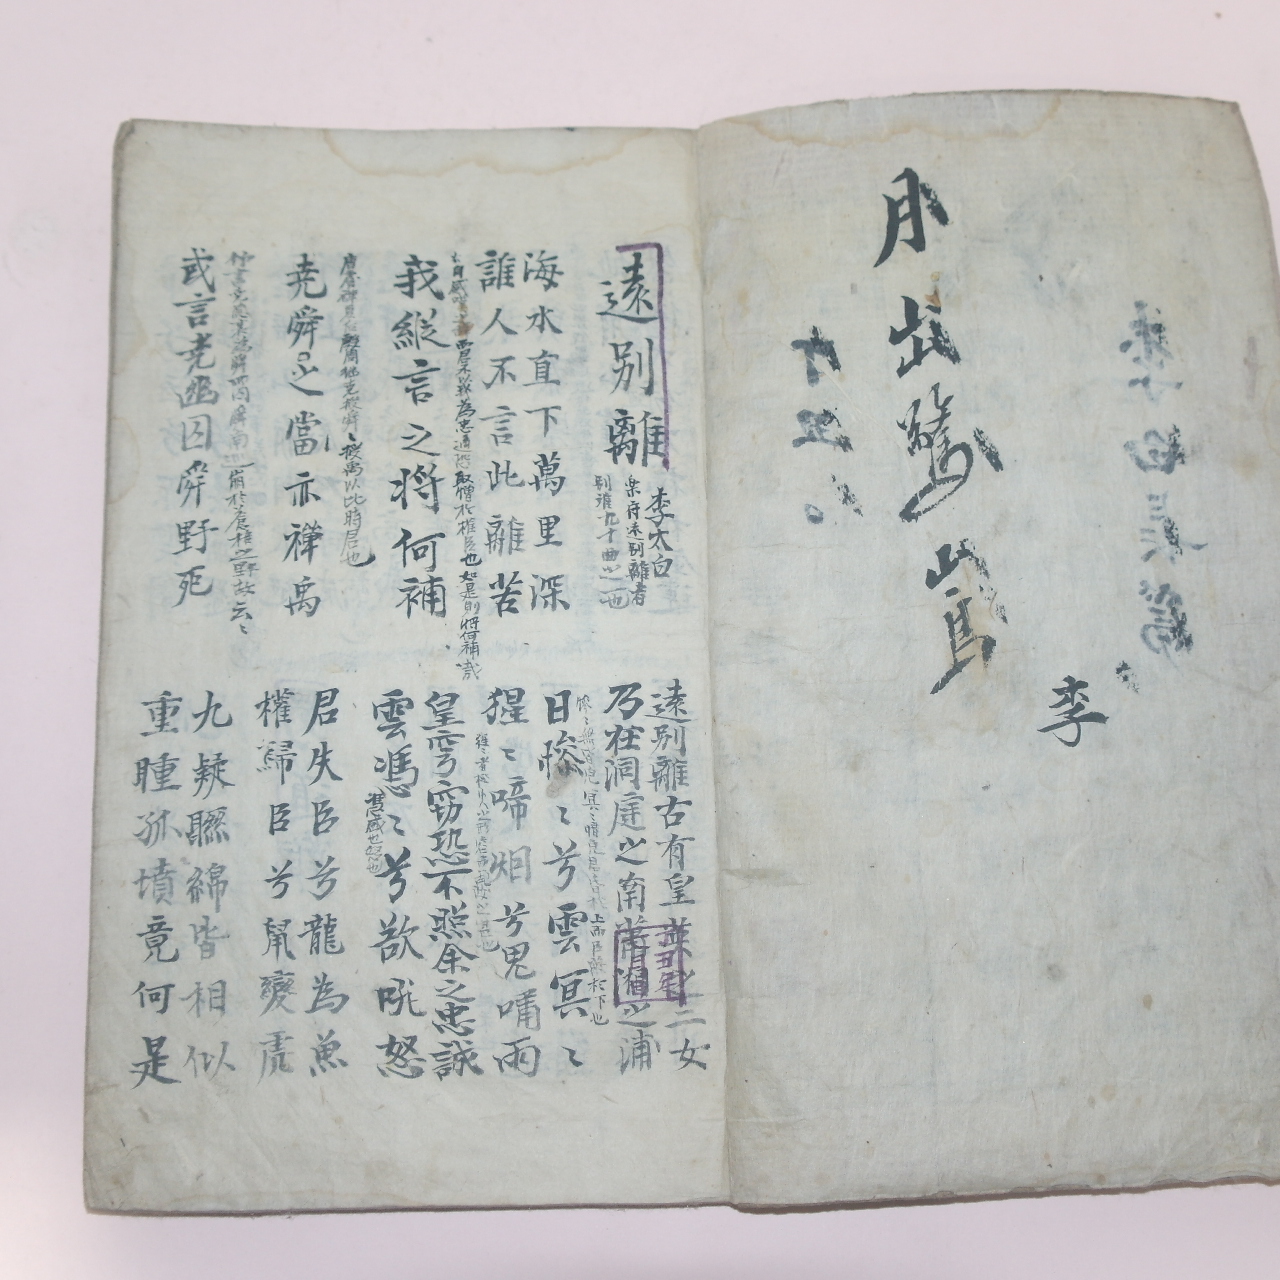 조선시대 고필사본 이백(李白) 장편(長篇)